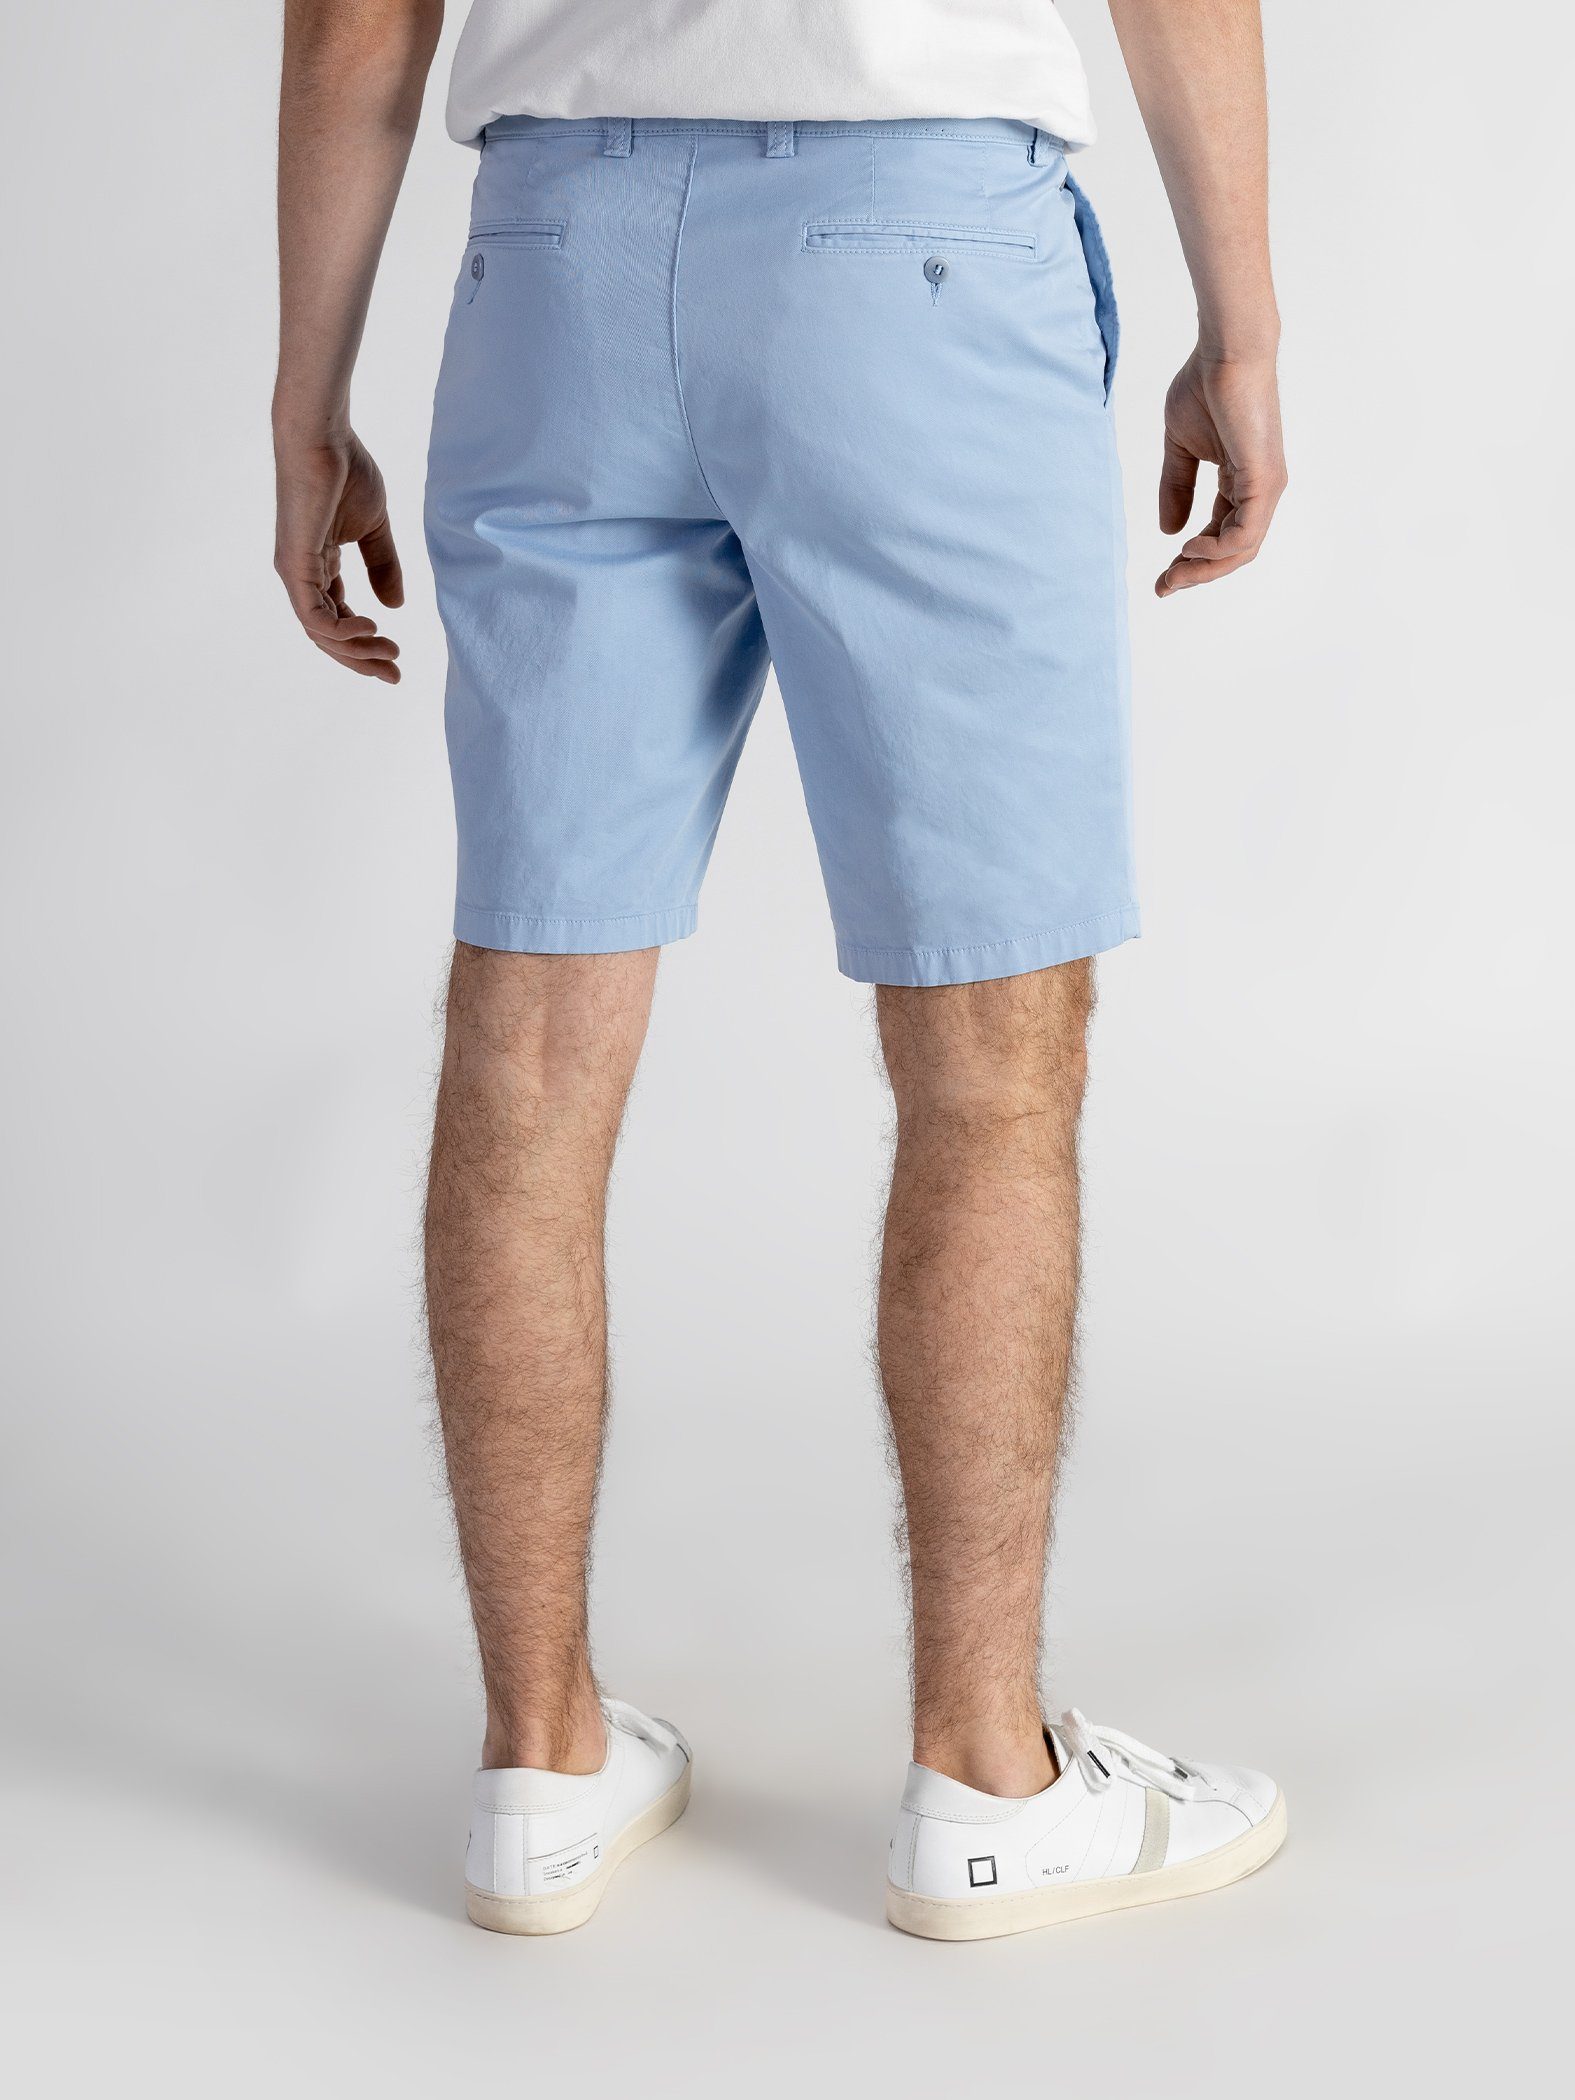 Shorts mit GOTS-zertifiziert TwoMates Shorts Farbauswahl, elastischem hellblau Bund,